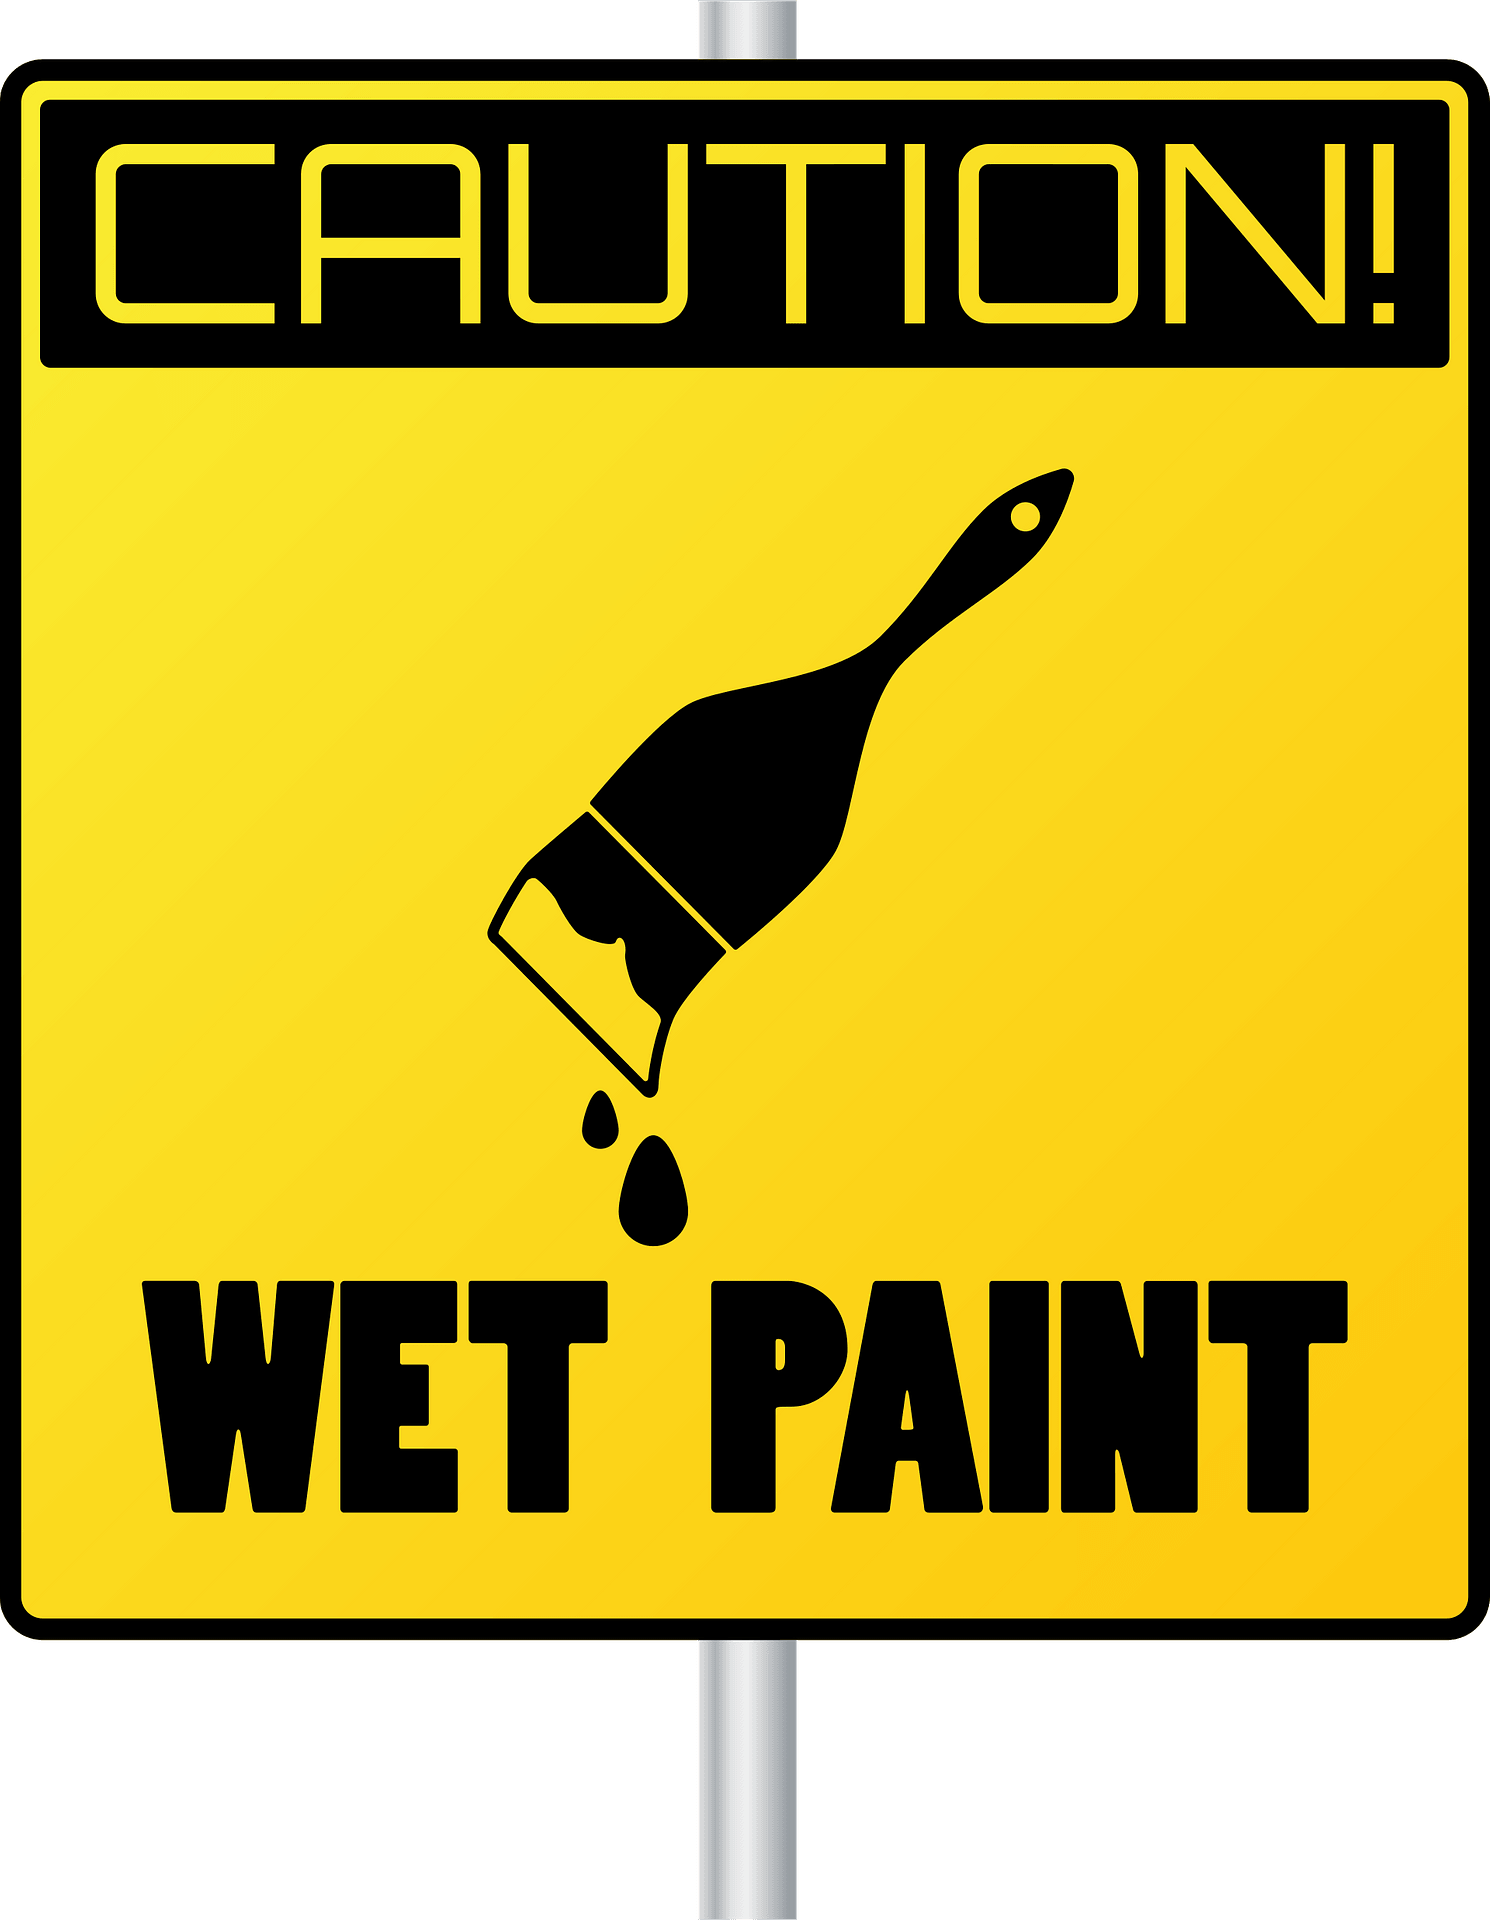 wet paints - Clip Art Library